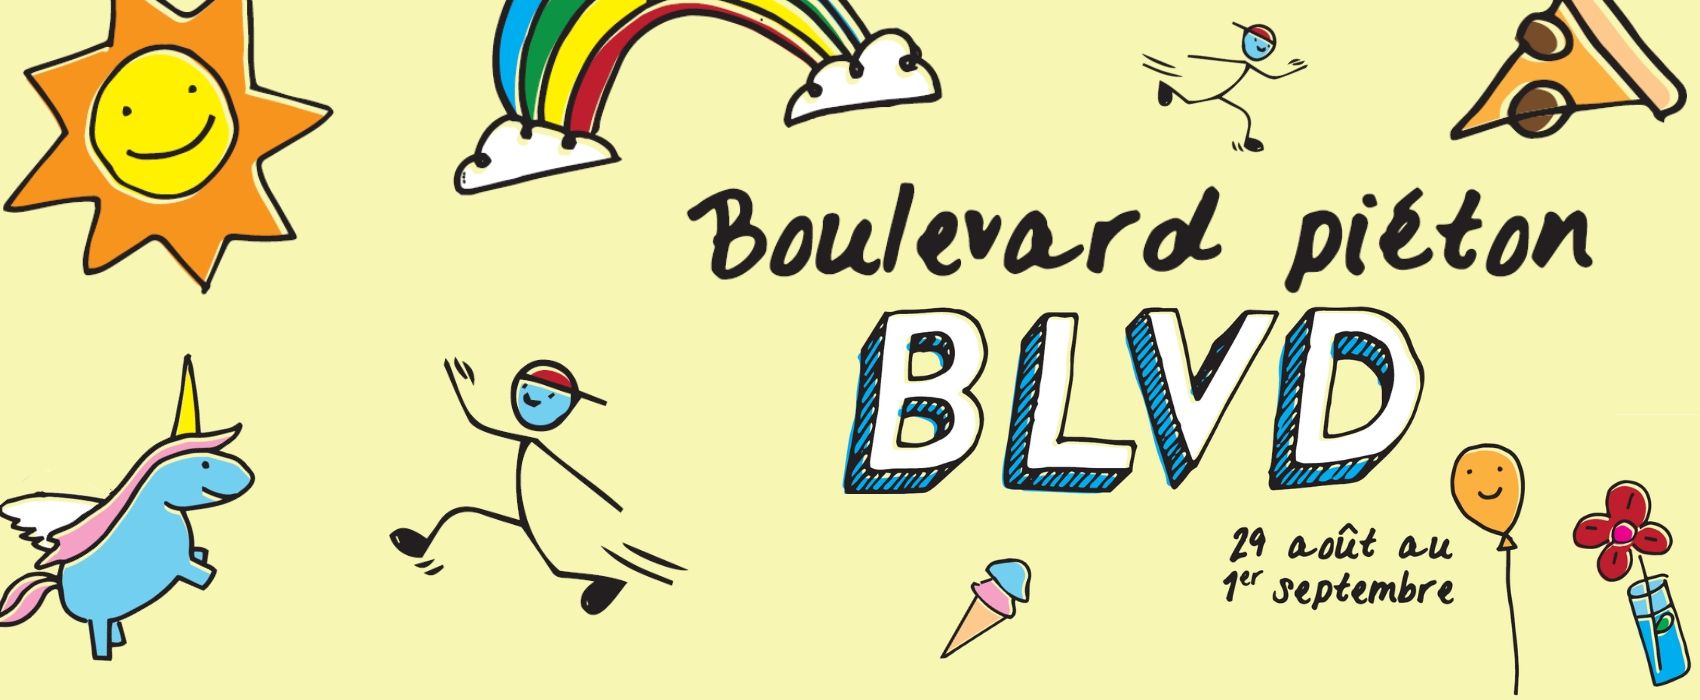 BLVD – Boulevard piéton